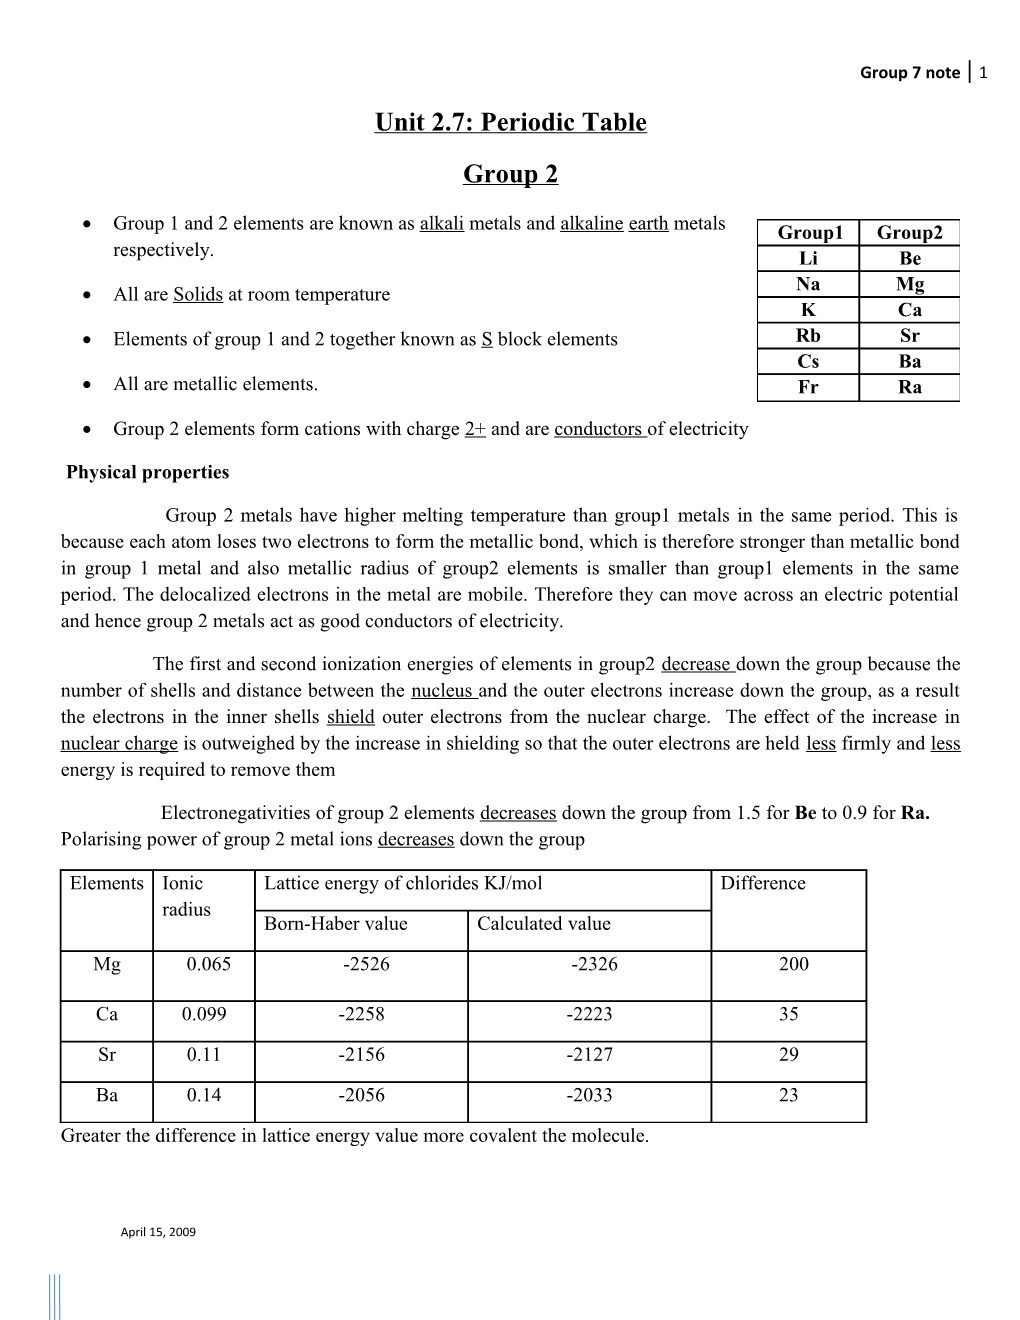 Unit 2.7: Periodic Table